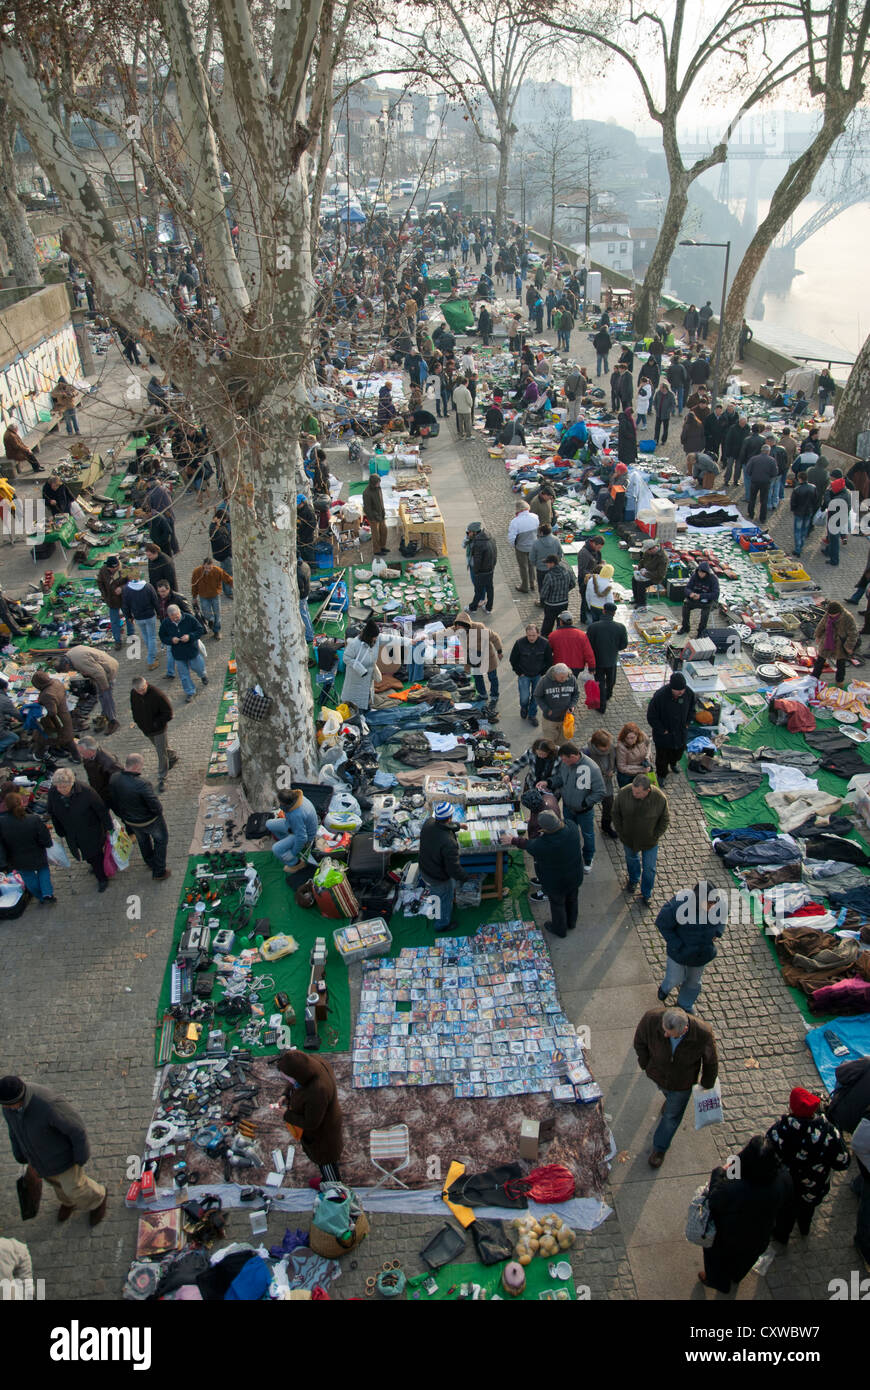 Flea market in Porto Portugal Stock Photo: 50959923 - Alamy